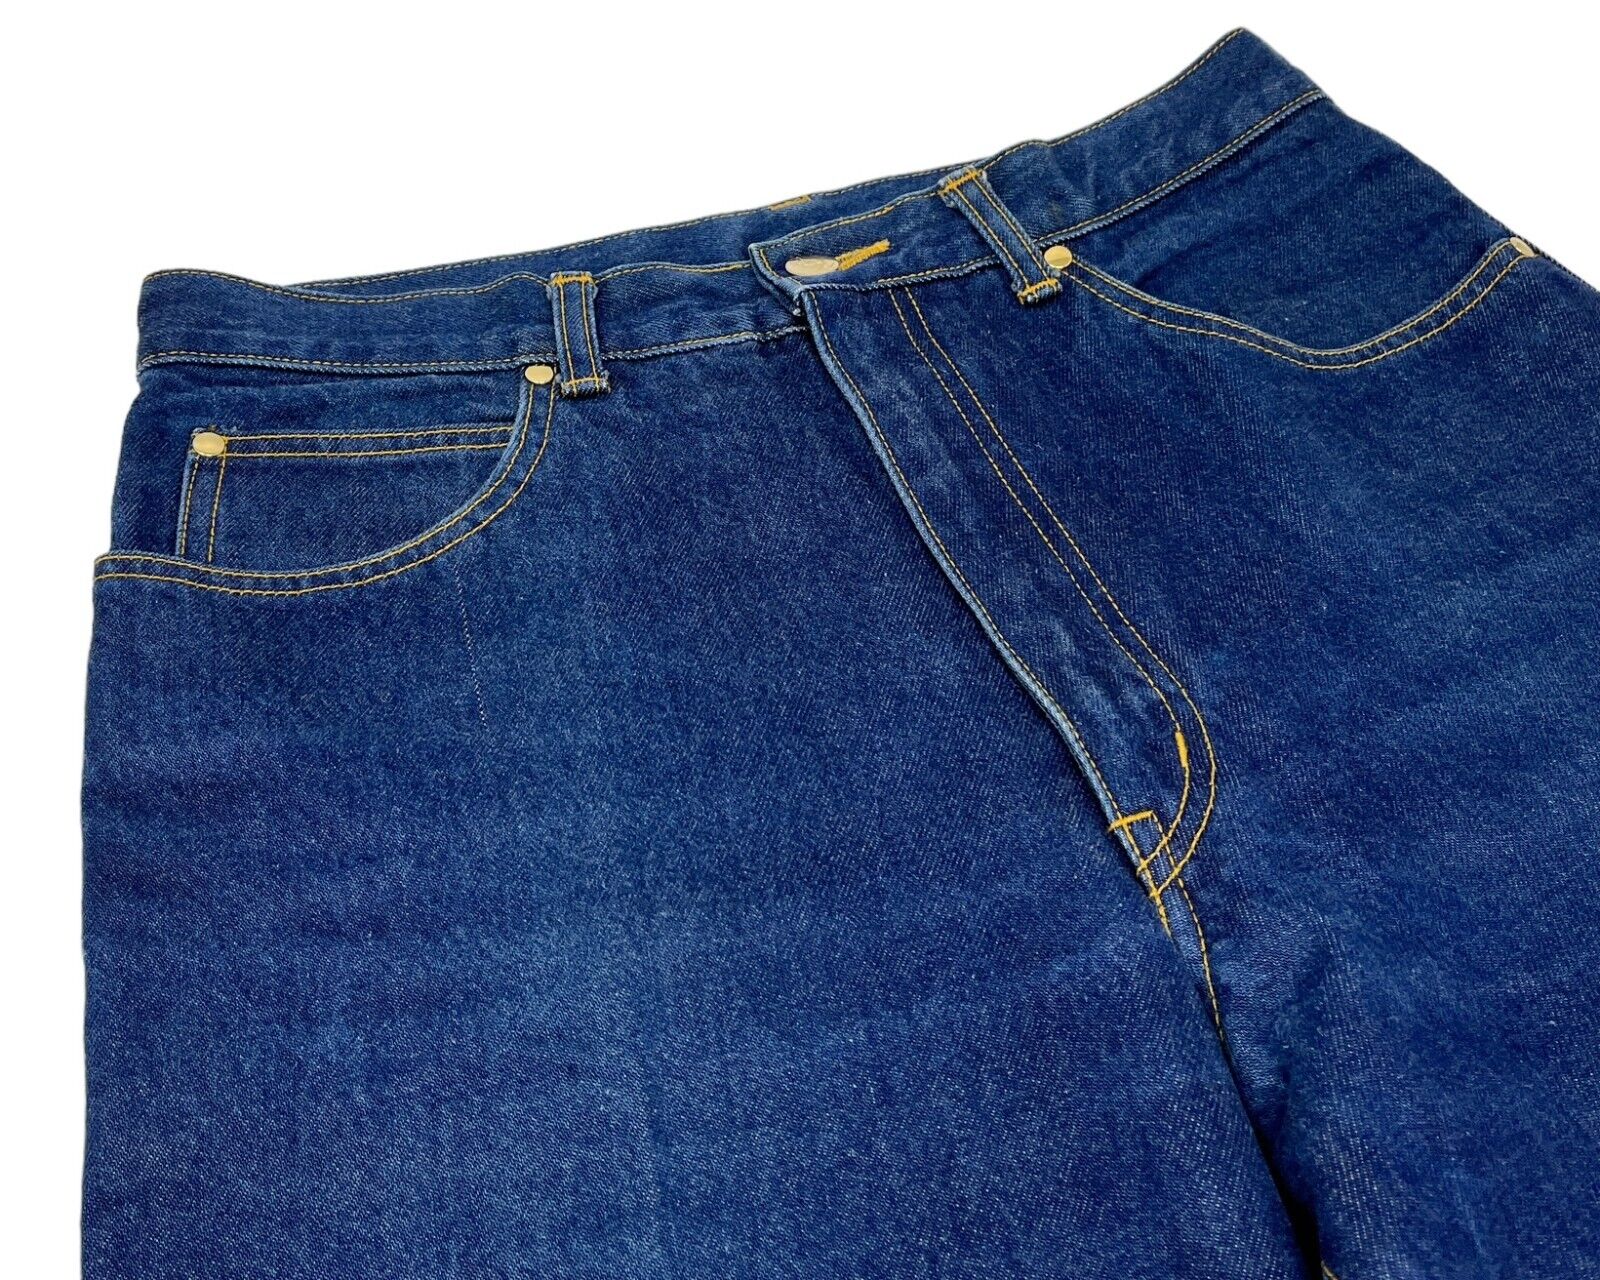 Yves Saint Laurent Vintage Initial Logo Denim Pants #46 Blue Gold Cotton RankAB